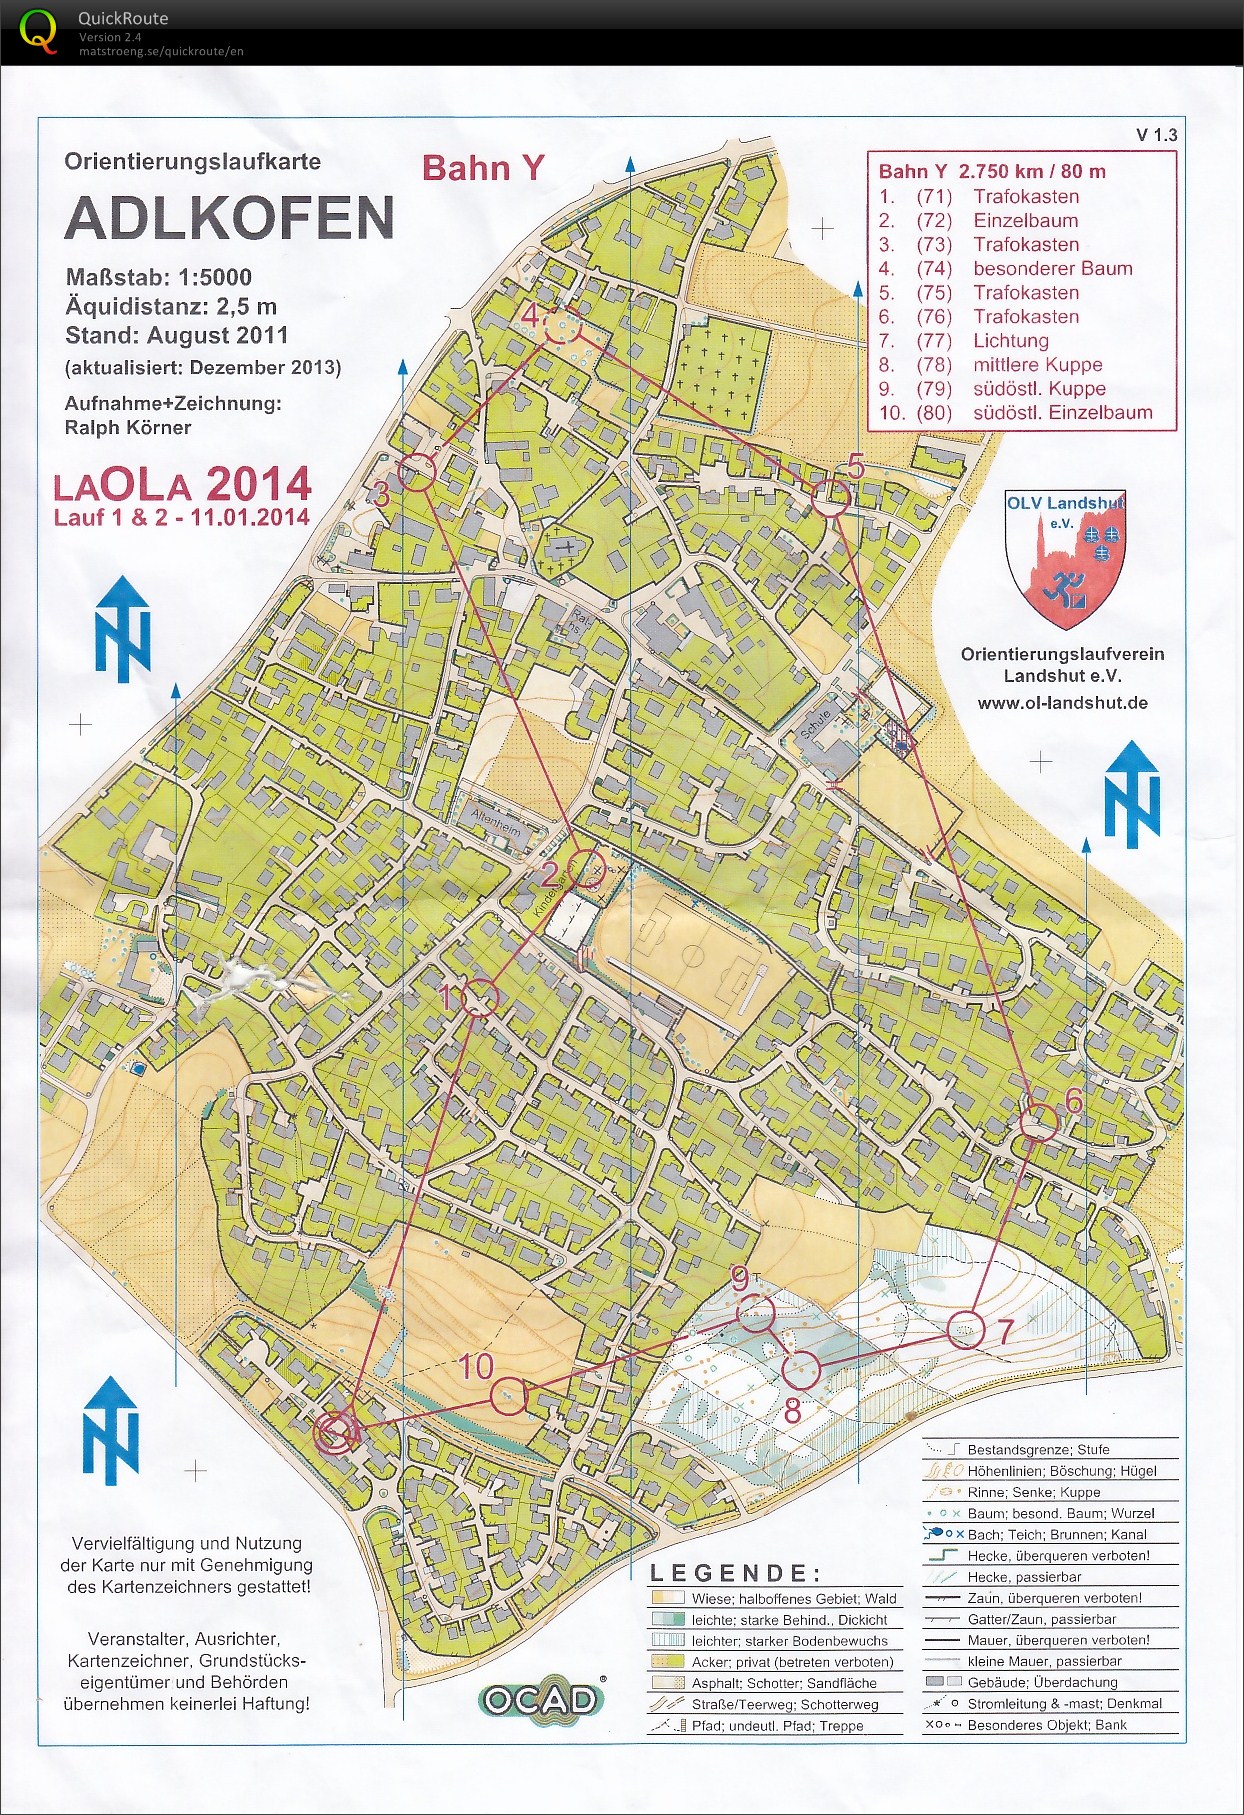 LaOLa 2014 Lauf 1 (11-01-2014)